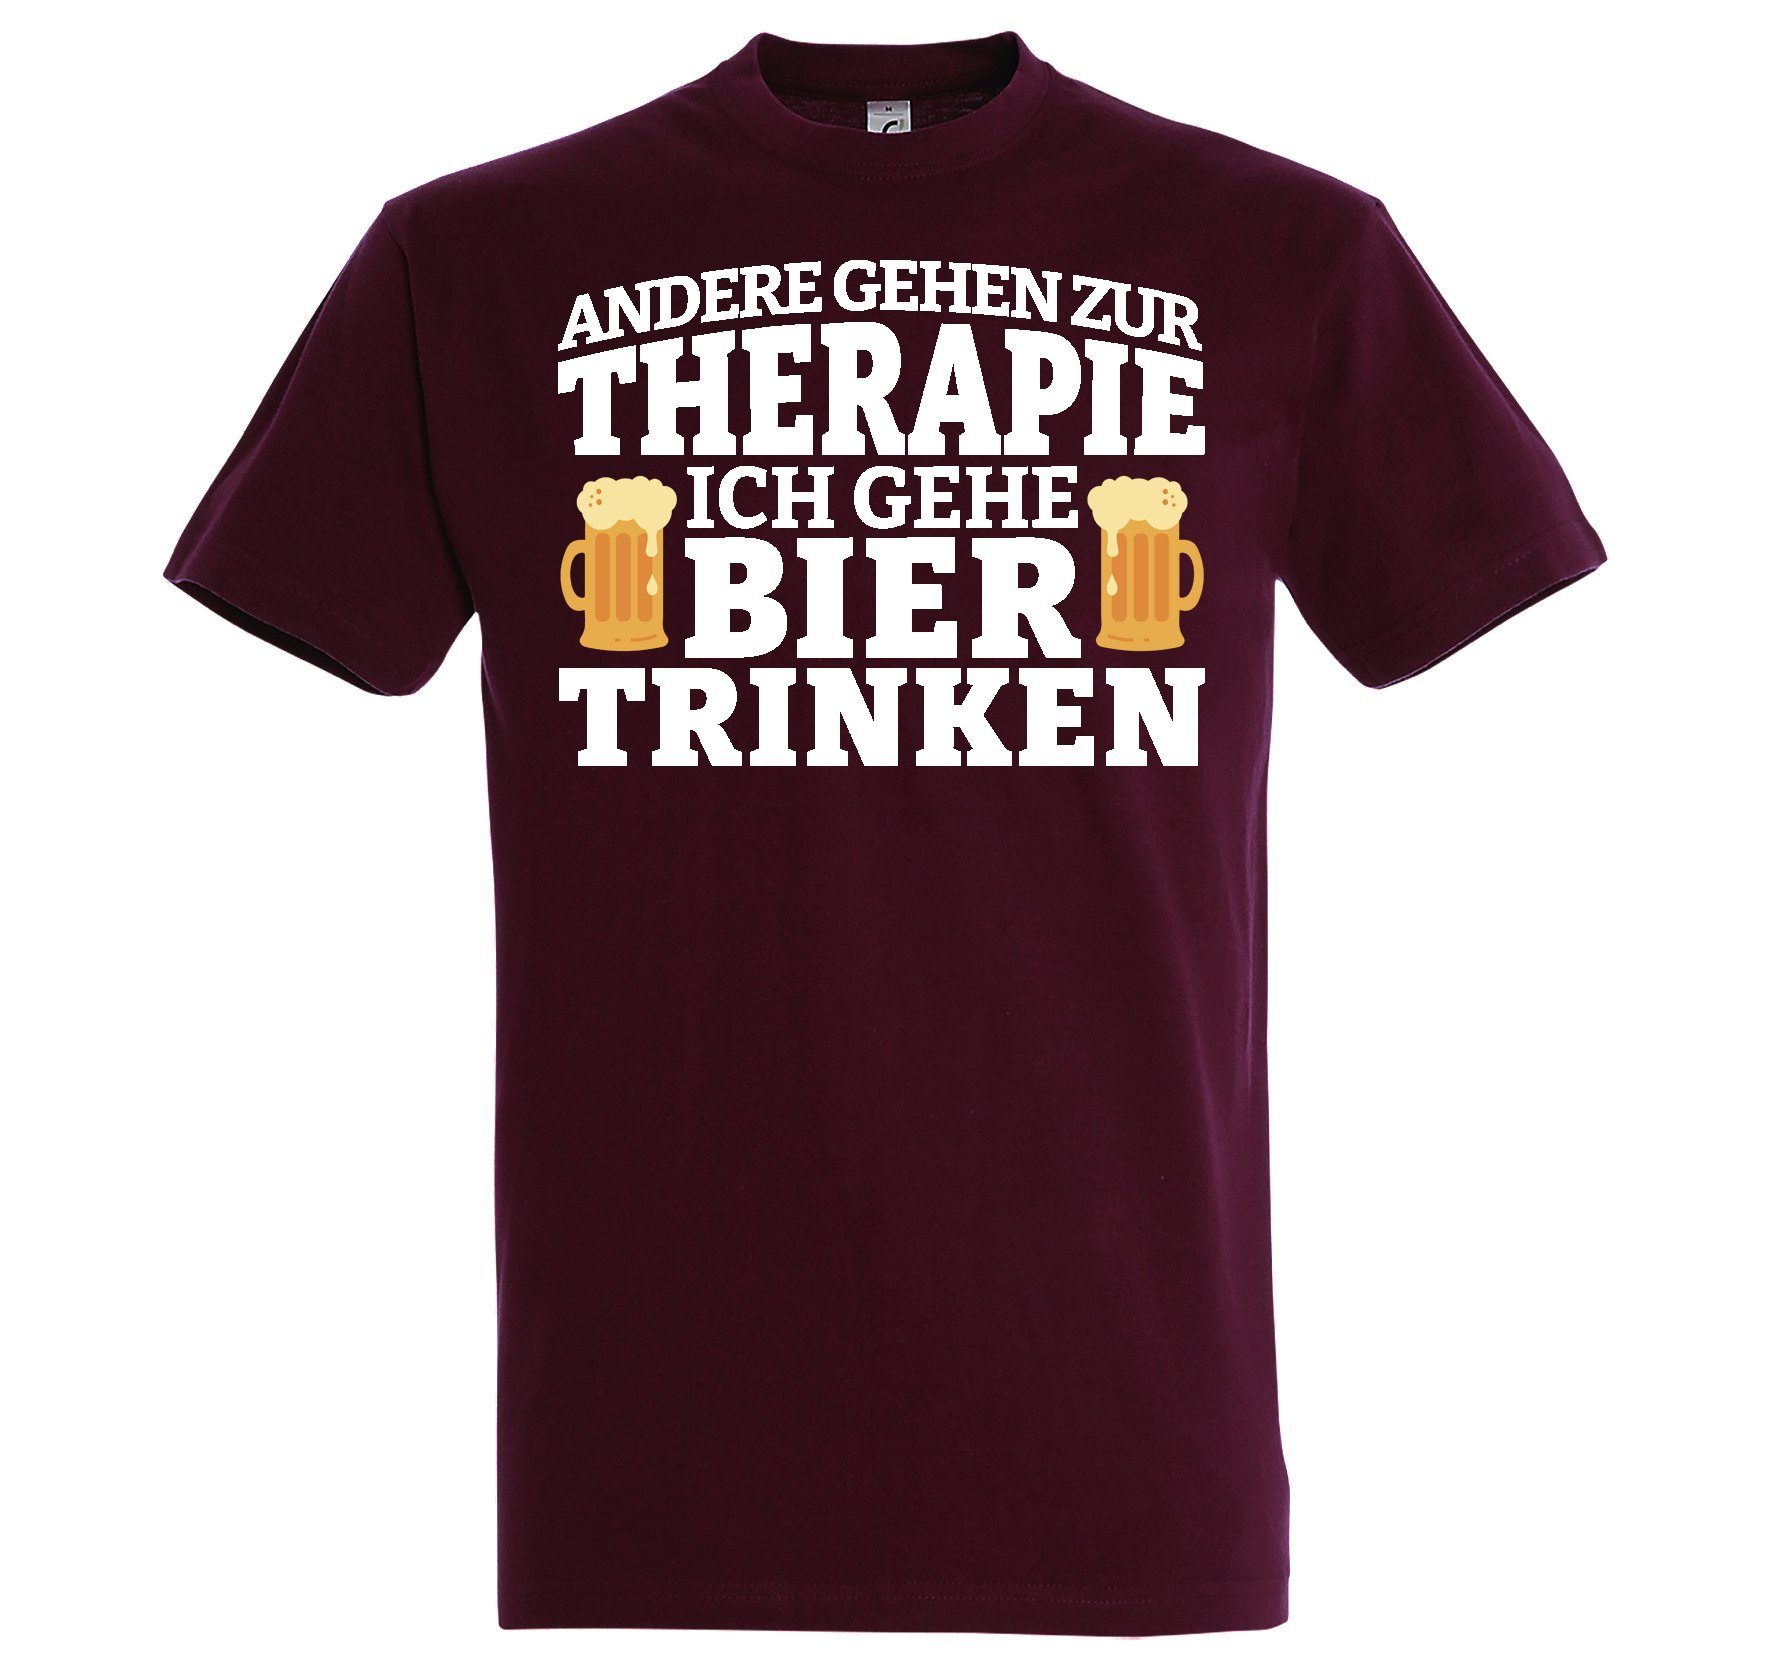 Youth Designz T-Shirt Bier Therapie Herren Shirt mit Lustigem Bier Spruch Burgund